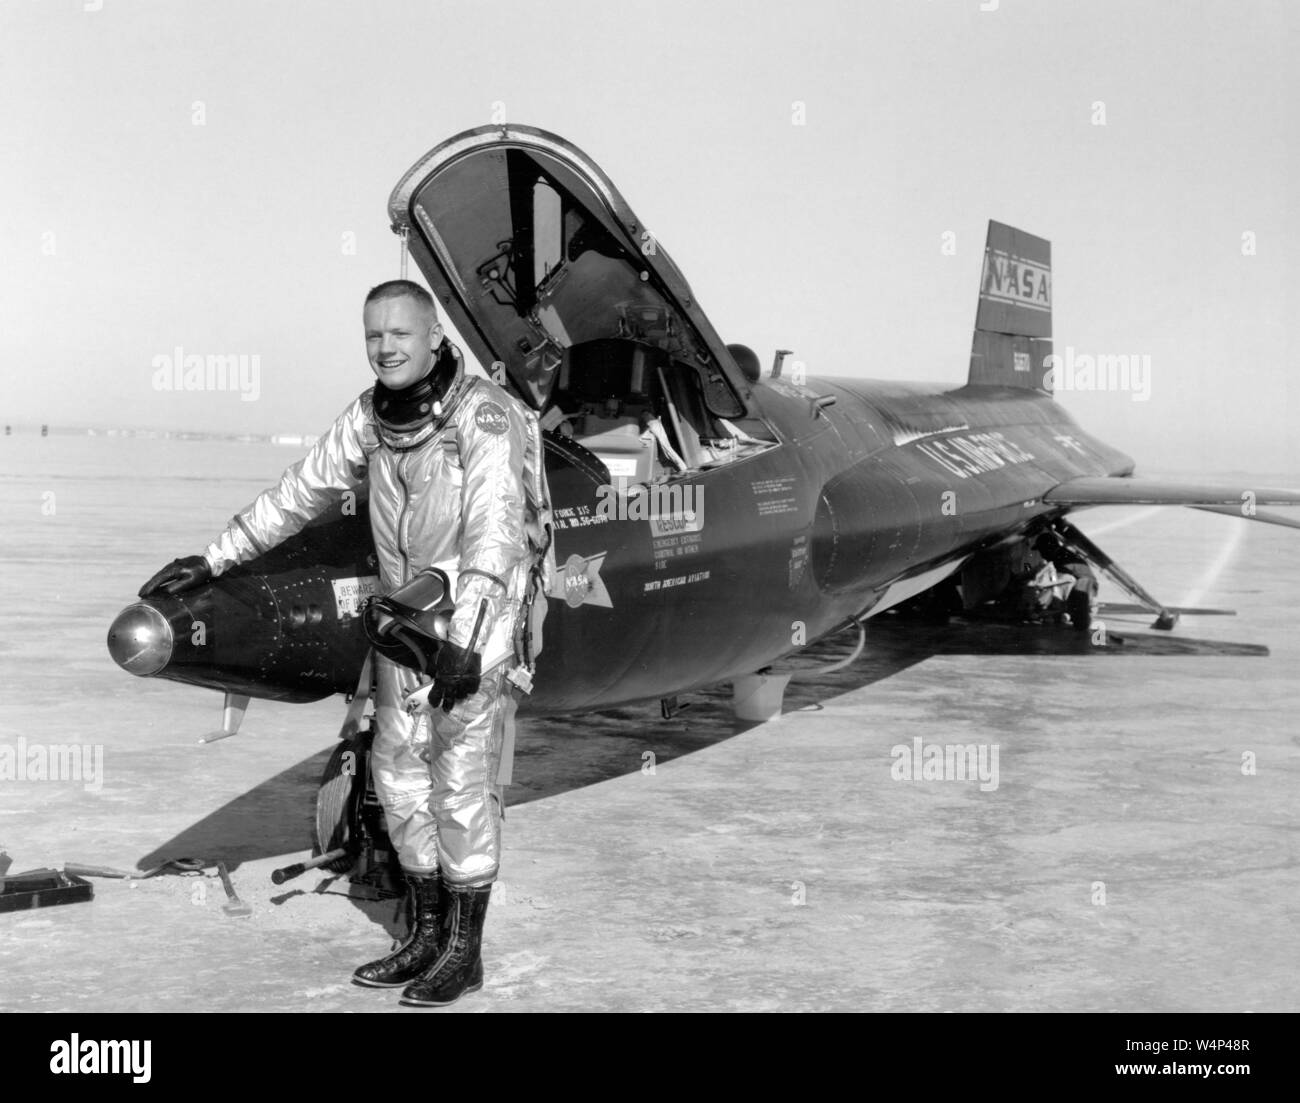 Pilota di Dryden Neil Armstrong pone accanto alla X-15 nave 1 razzo-powered aeromobile dopo un volo di ricerca, Novembre 30, 1959. Immagine cortesia Nazionale Aeronautica e Spaziale Administration (NASA). () Foto Stock